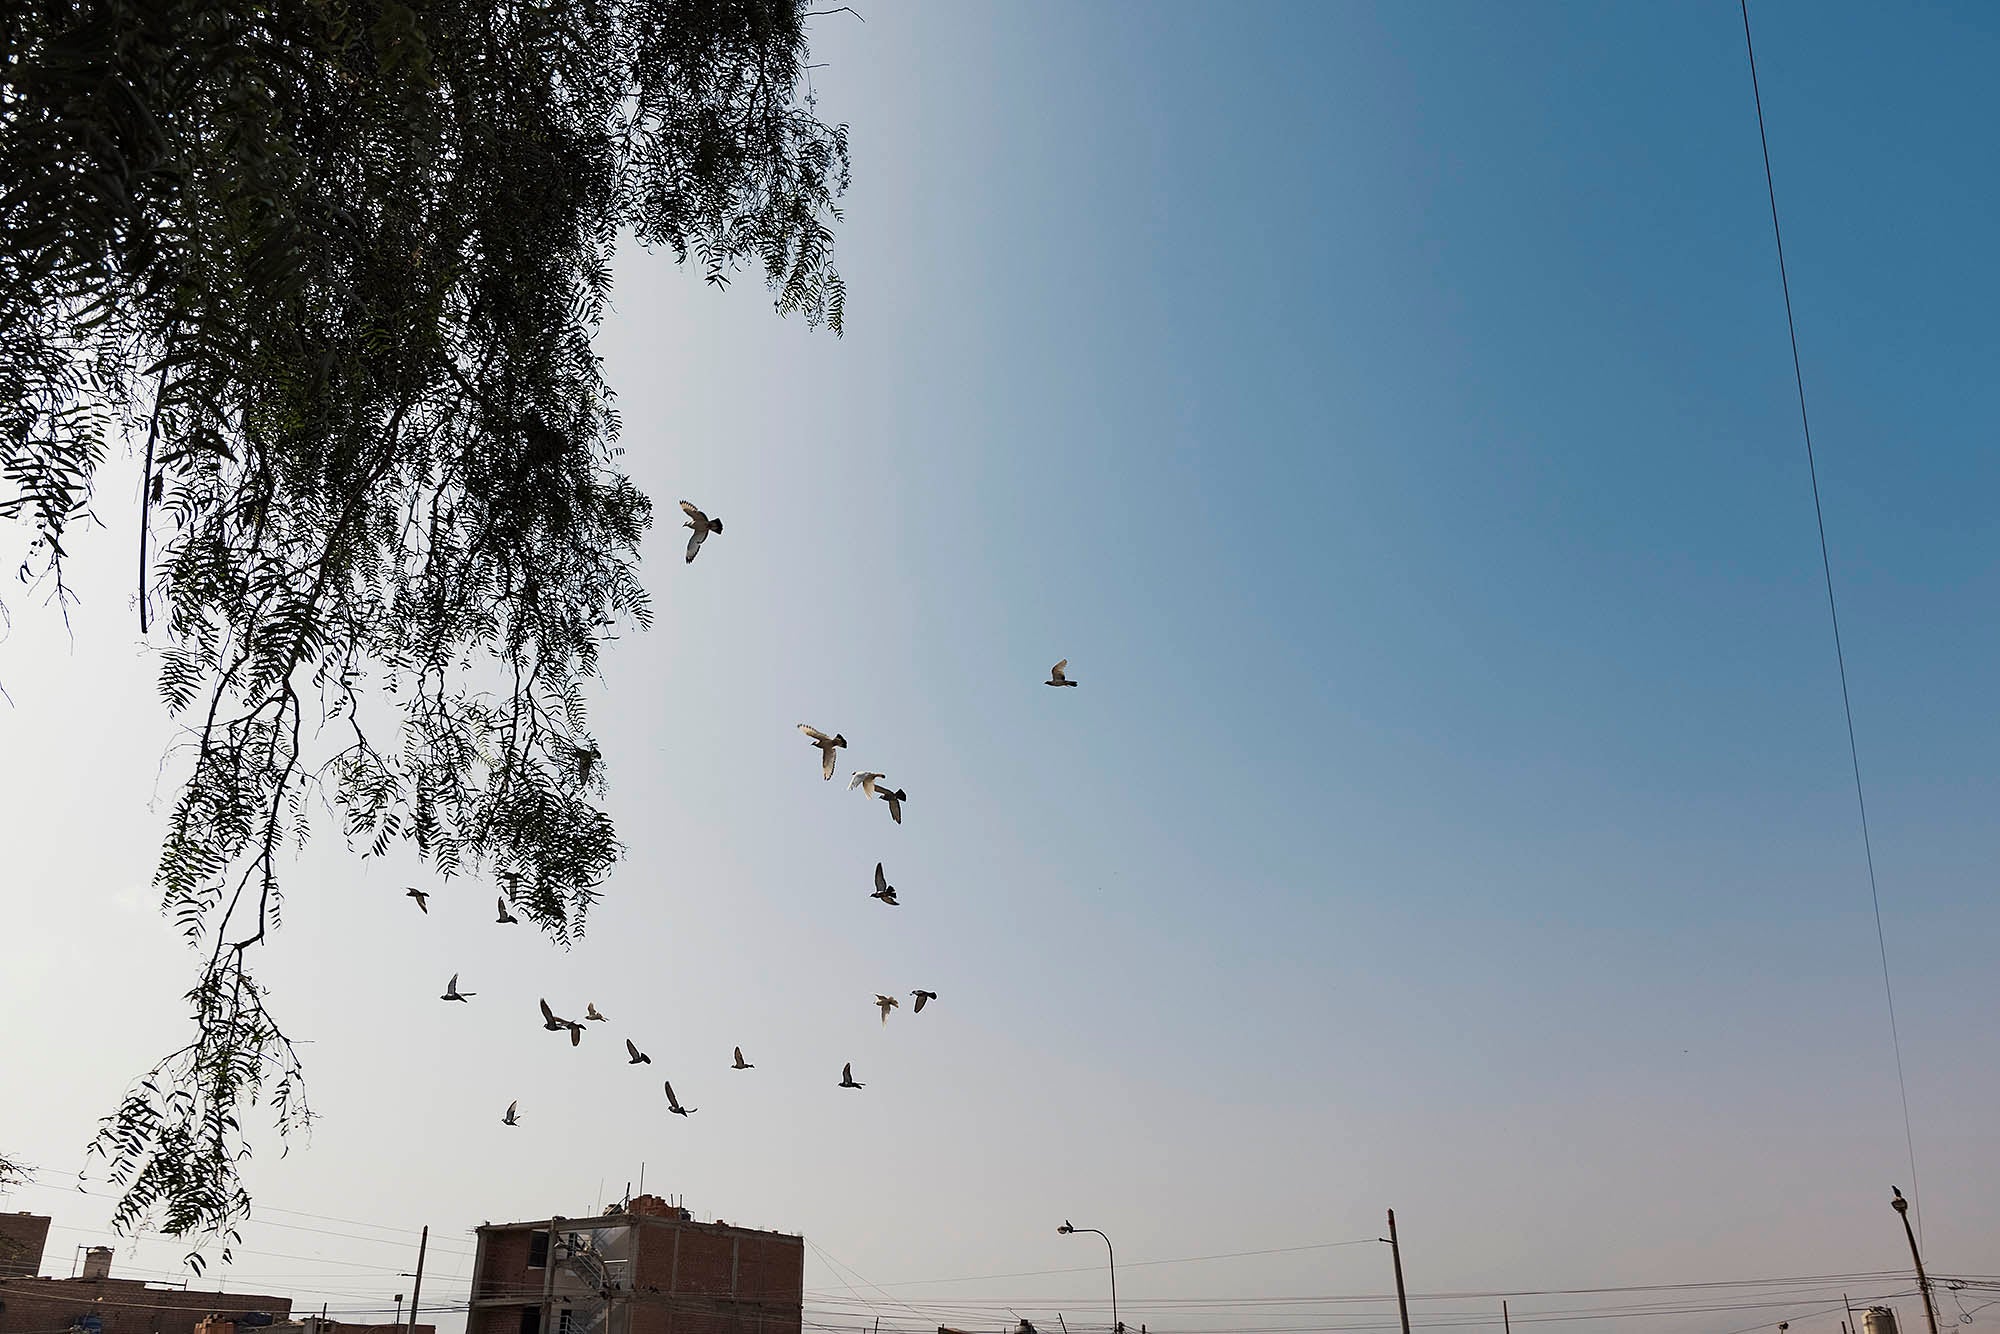 Photographie prise dans les bidonvilles avec des oiseaux volant dans les airs photographiés